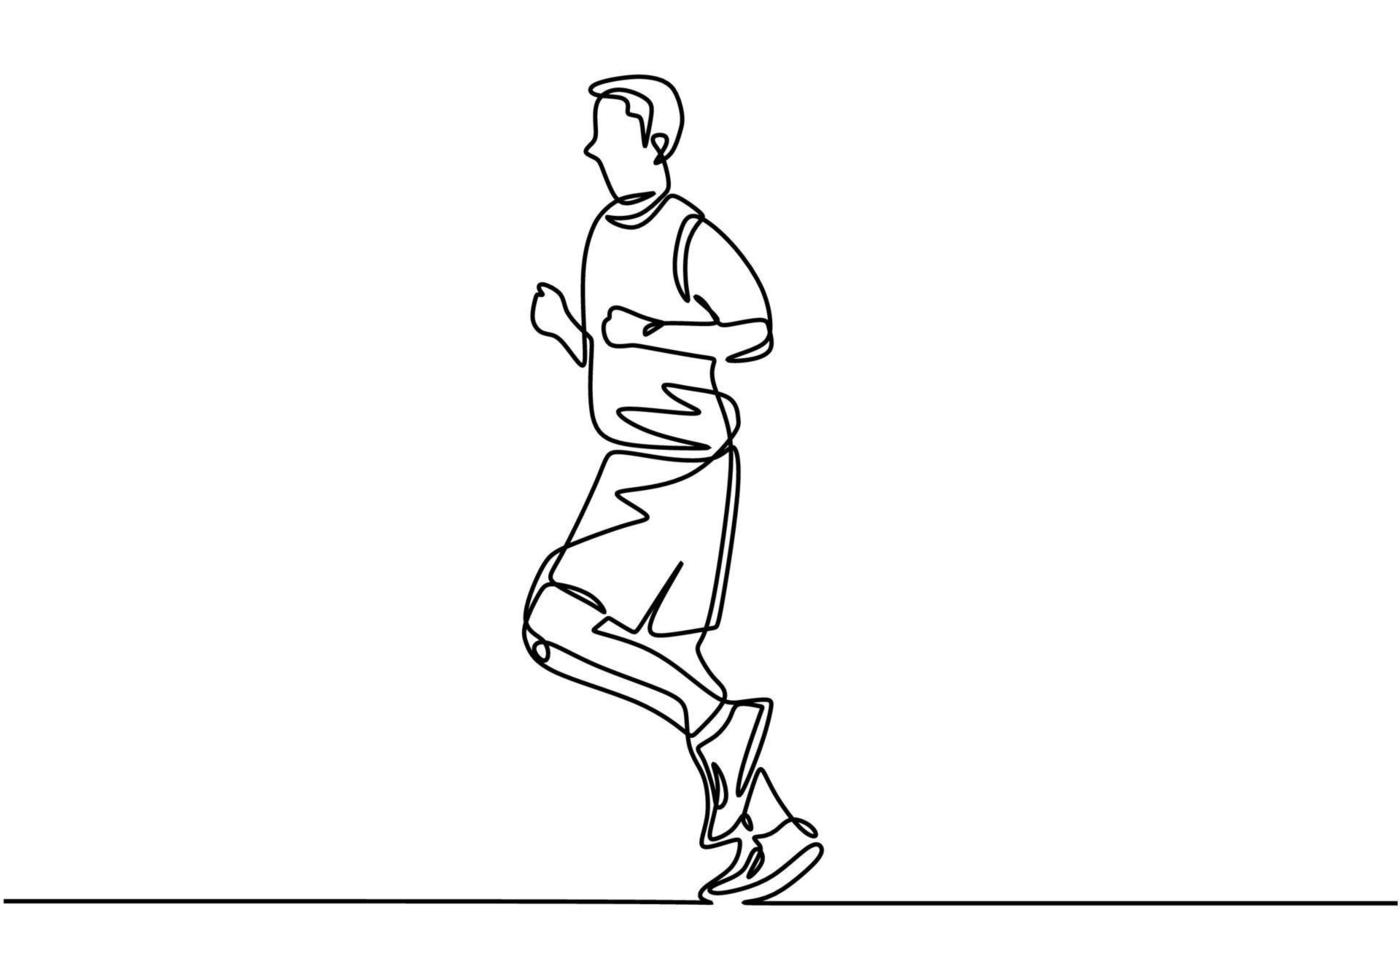 Einliniensport der laufenden Person. Mann, der Übungsaktivität macht vektor